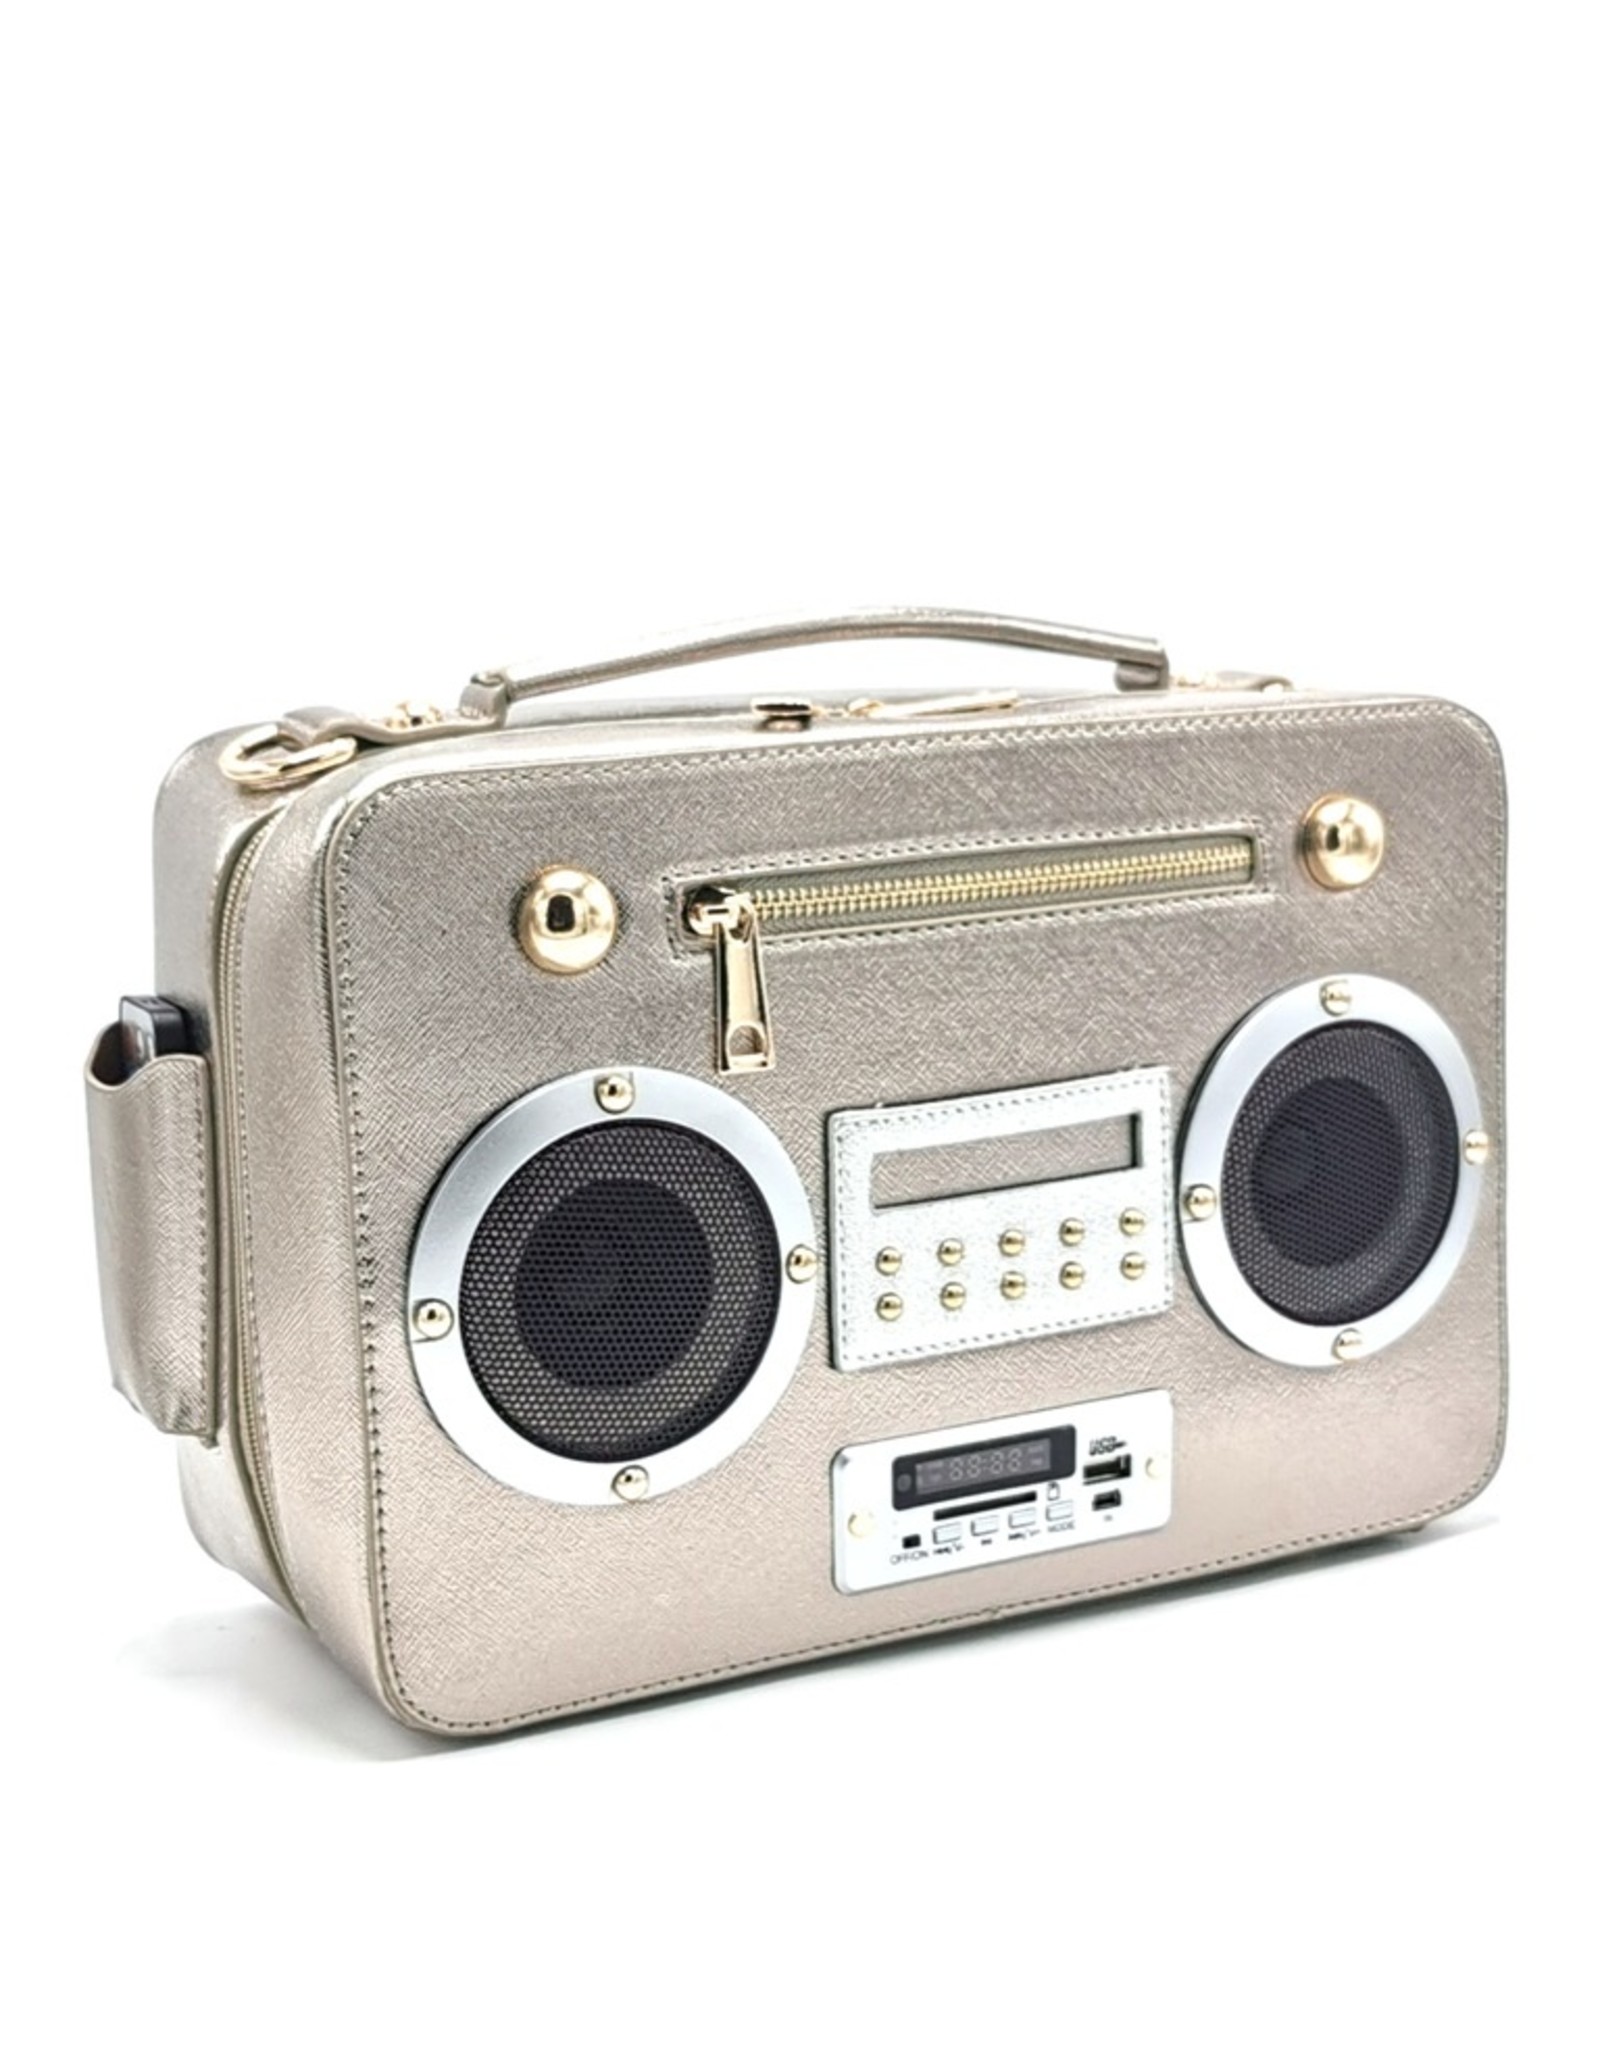 Magic Bags Fantasy bags and wallets - Boombox Radio Handbag with Real Radio silver